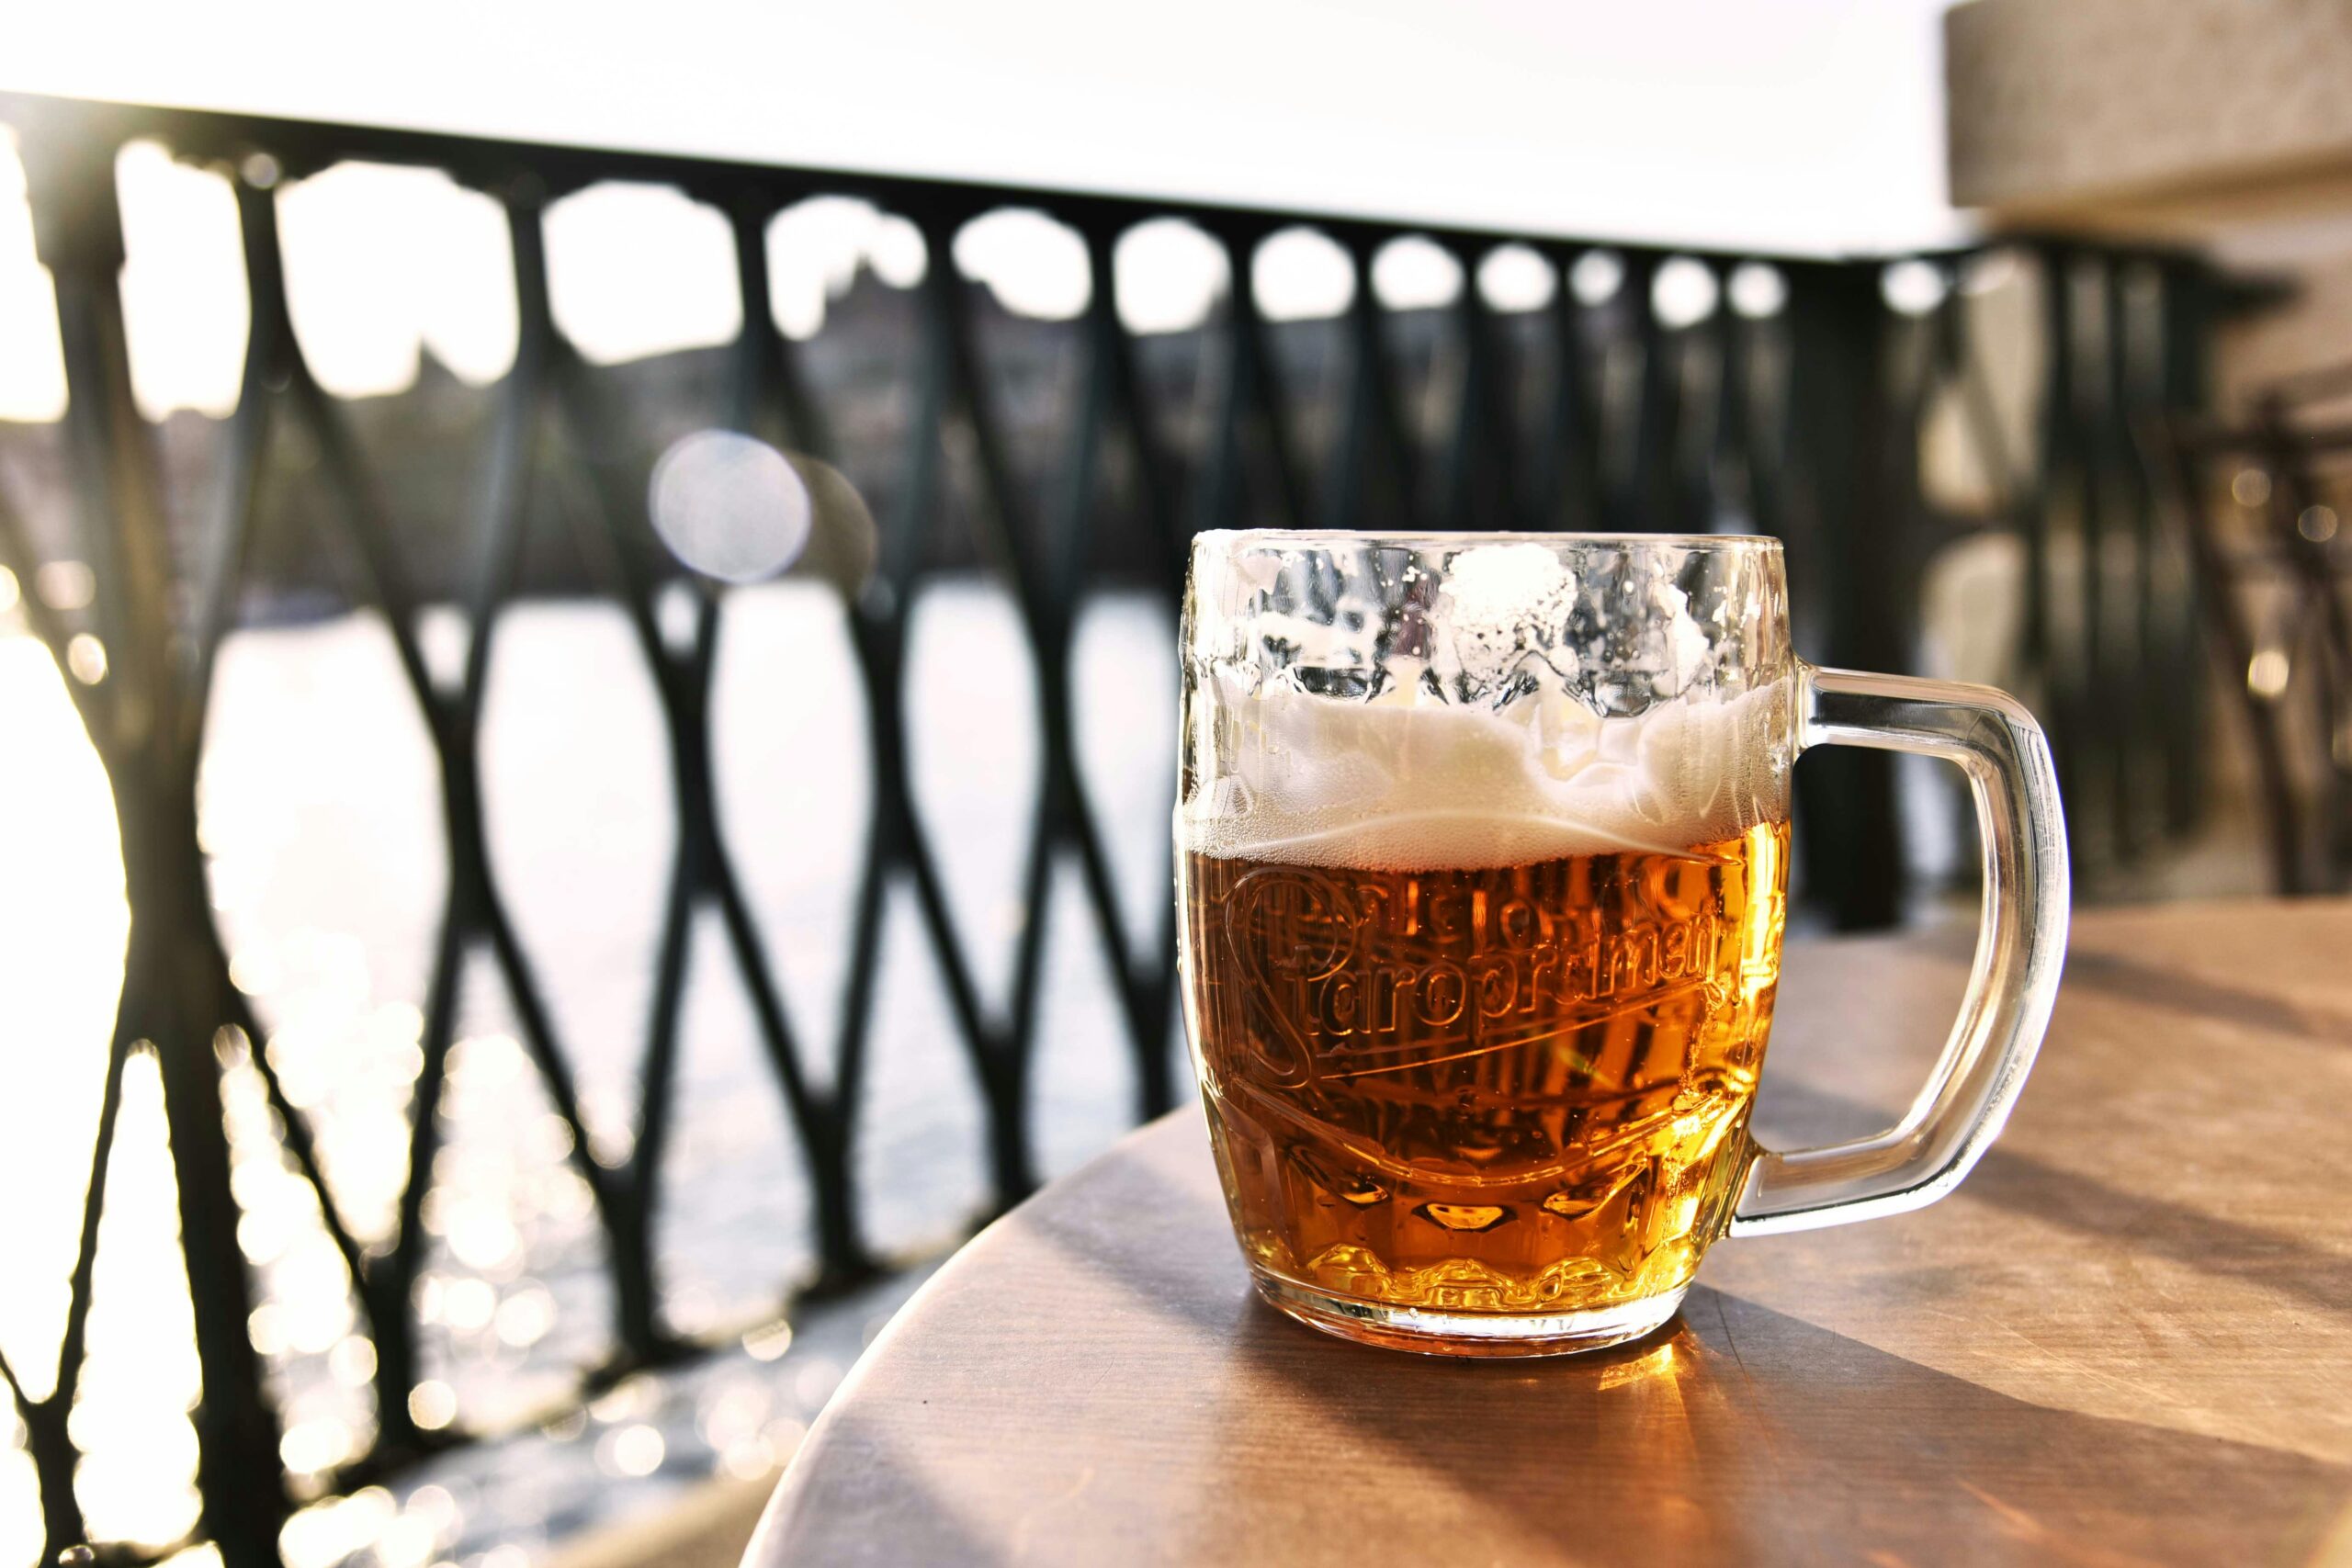 Quanta birra fa bene al giorno? La quantità ideale senza compromettere la salute